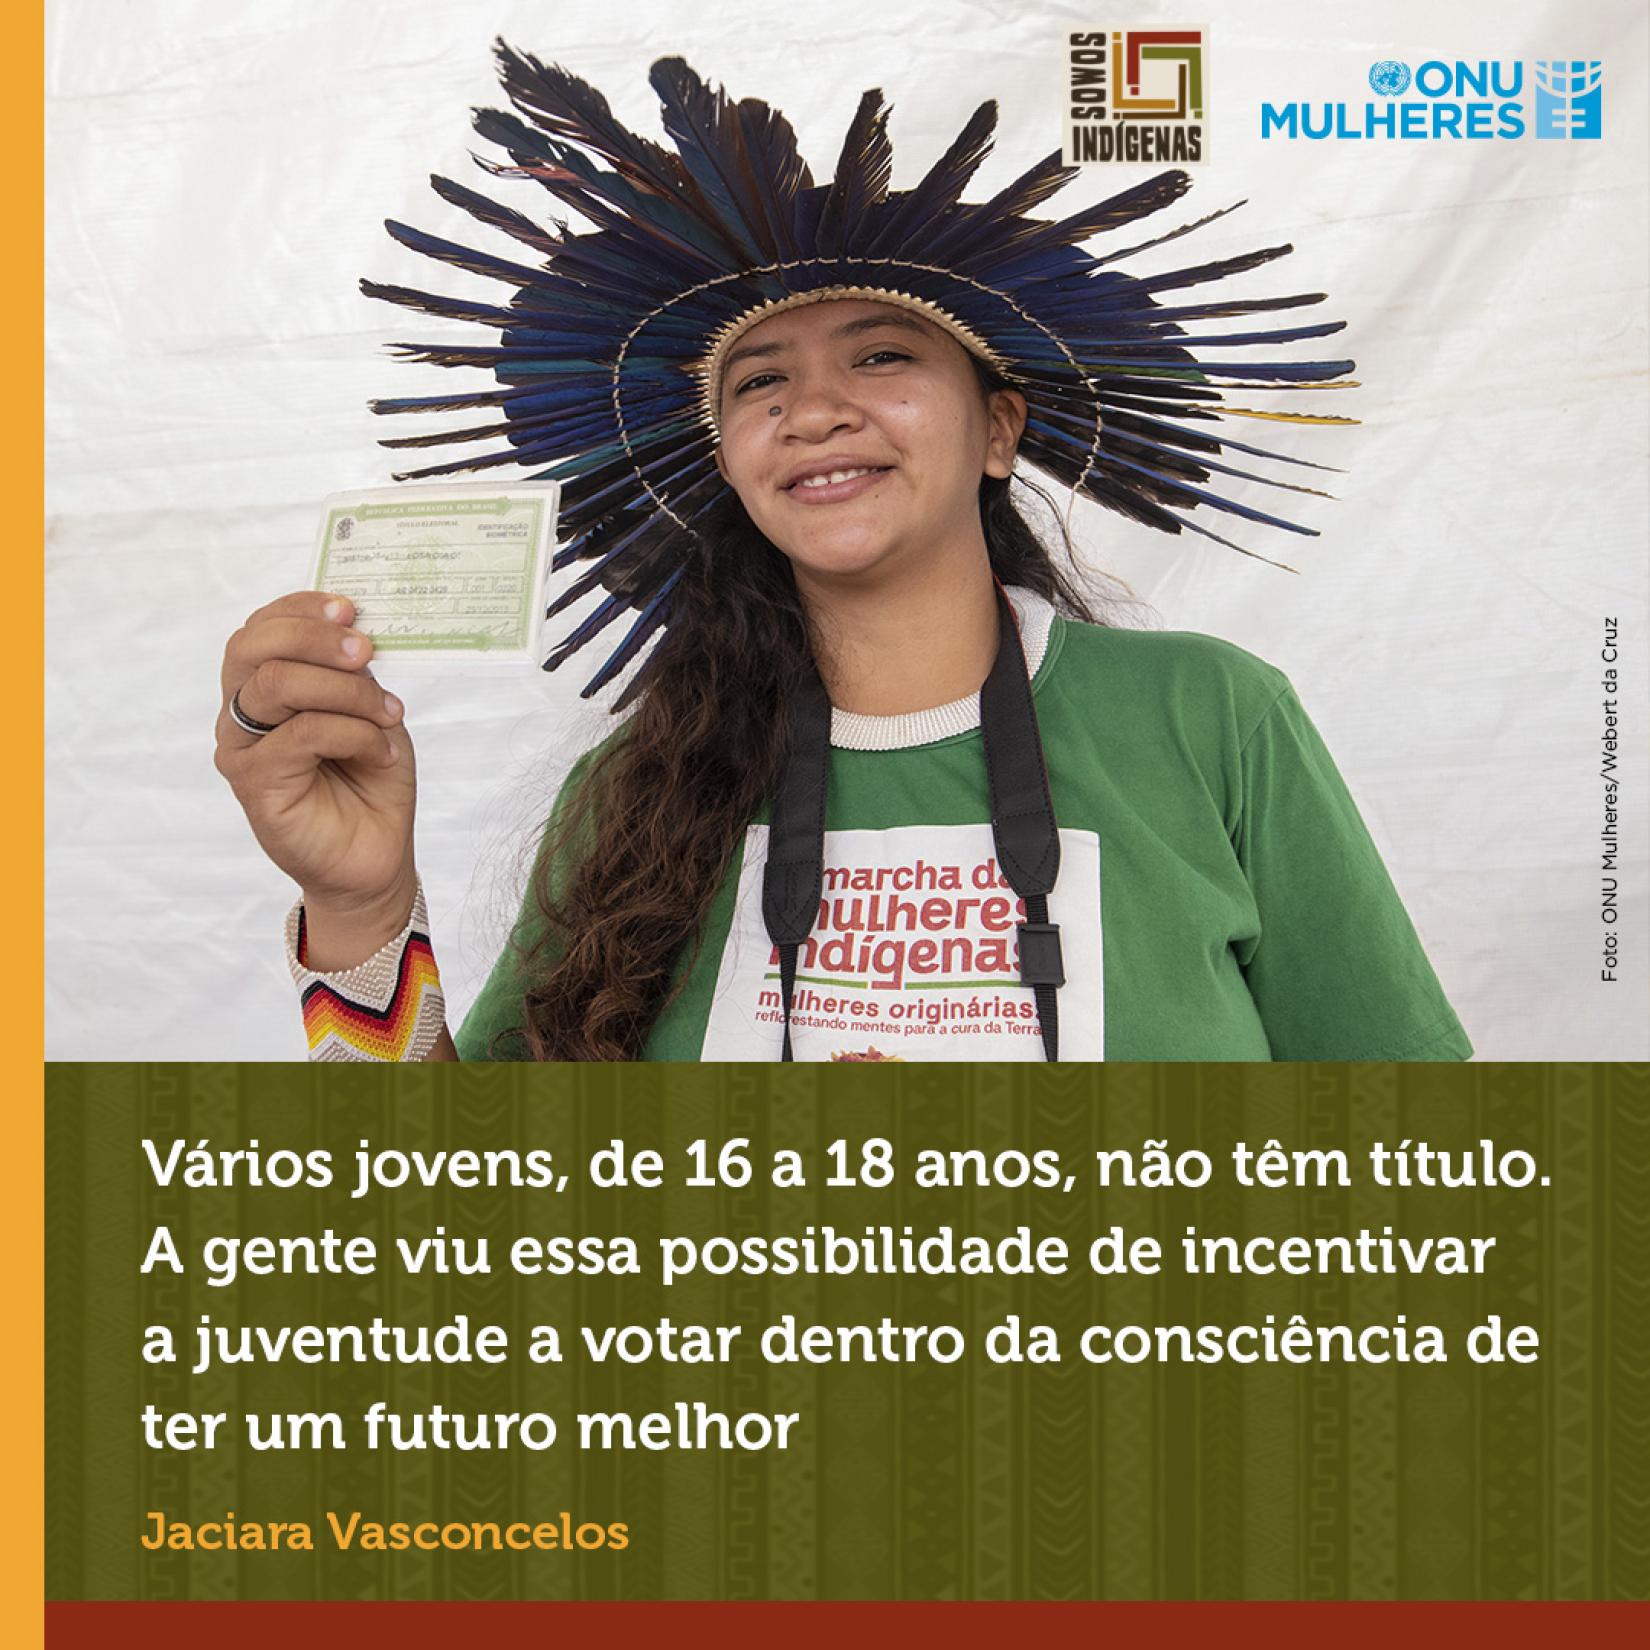 Jaciara Vasconcelos fez o seu título eleitoral aos 16 anos e, em 2022, é voluntária no alistamento eleitoral de adolescentes e jovens indígenas.